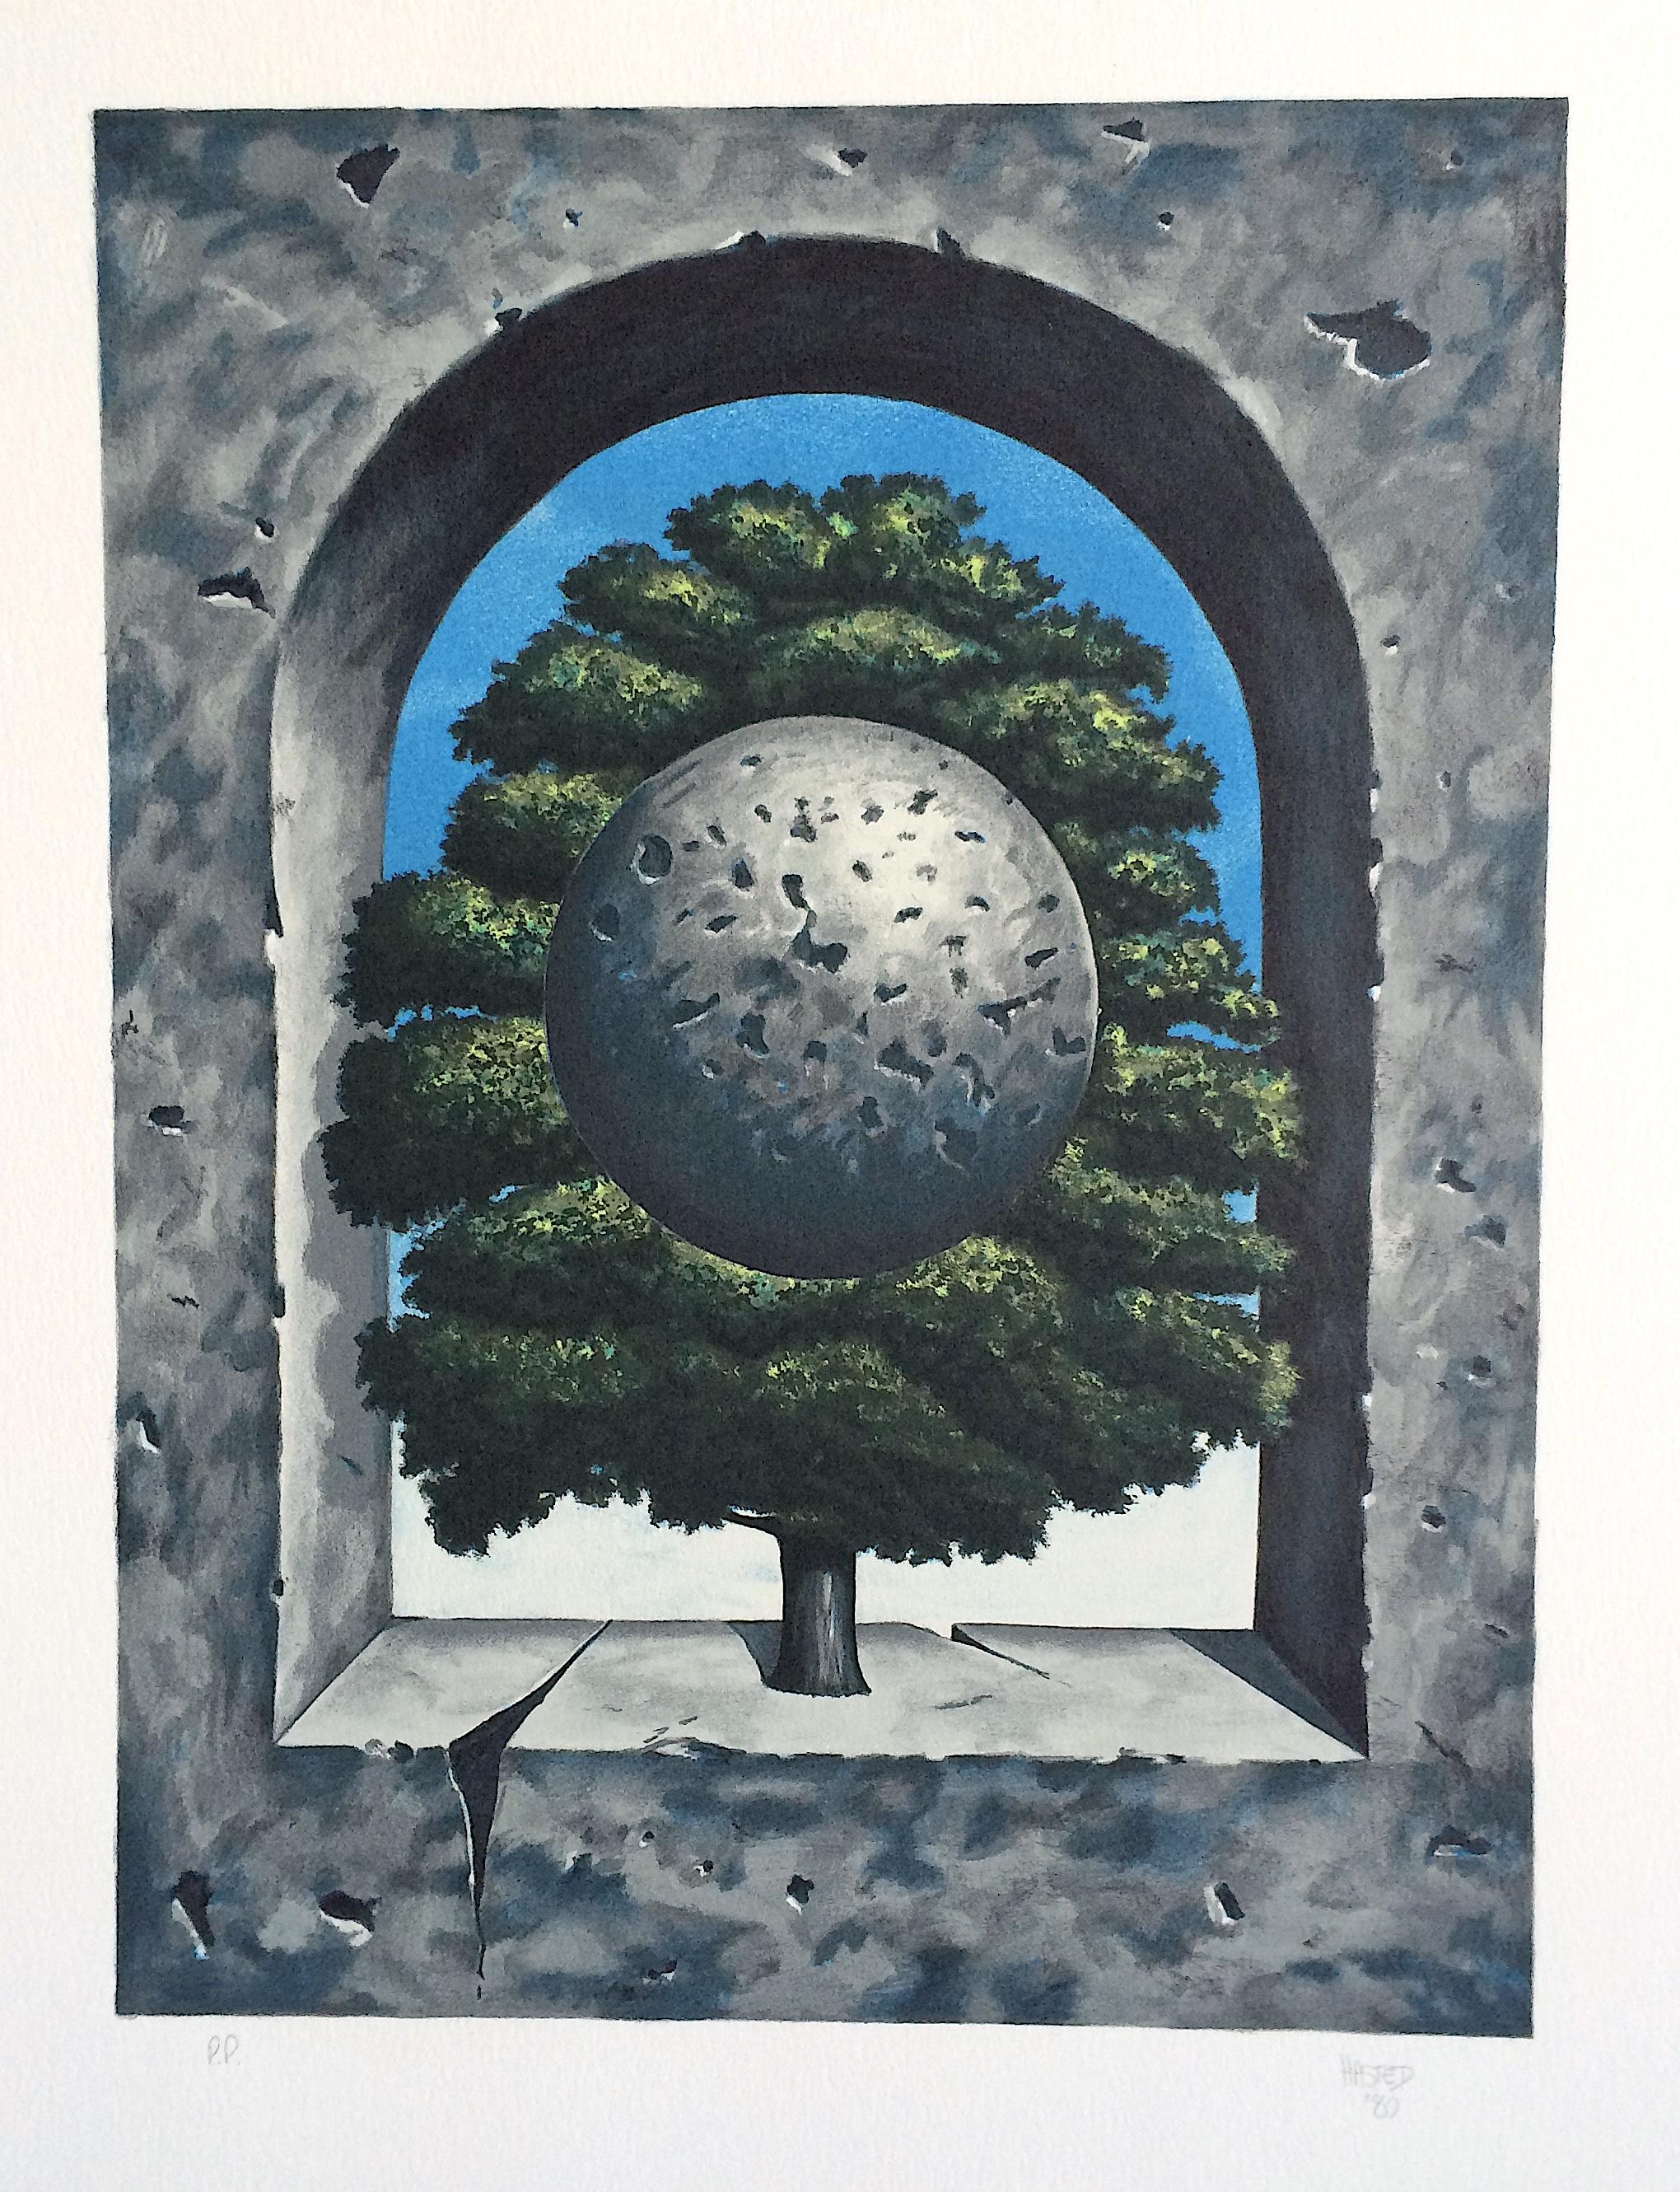 A POINT OF HONOR Handgezeichnete Lithographie, Surrealistischer Baum, blauer Himmel, Betonbogen